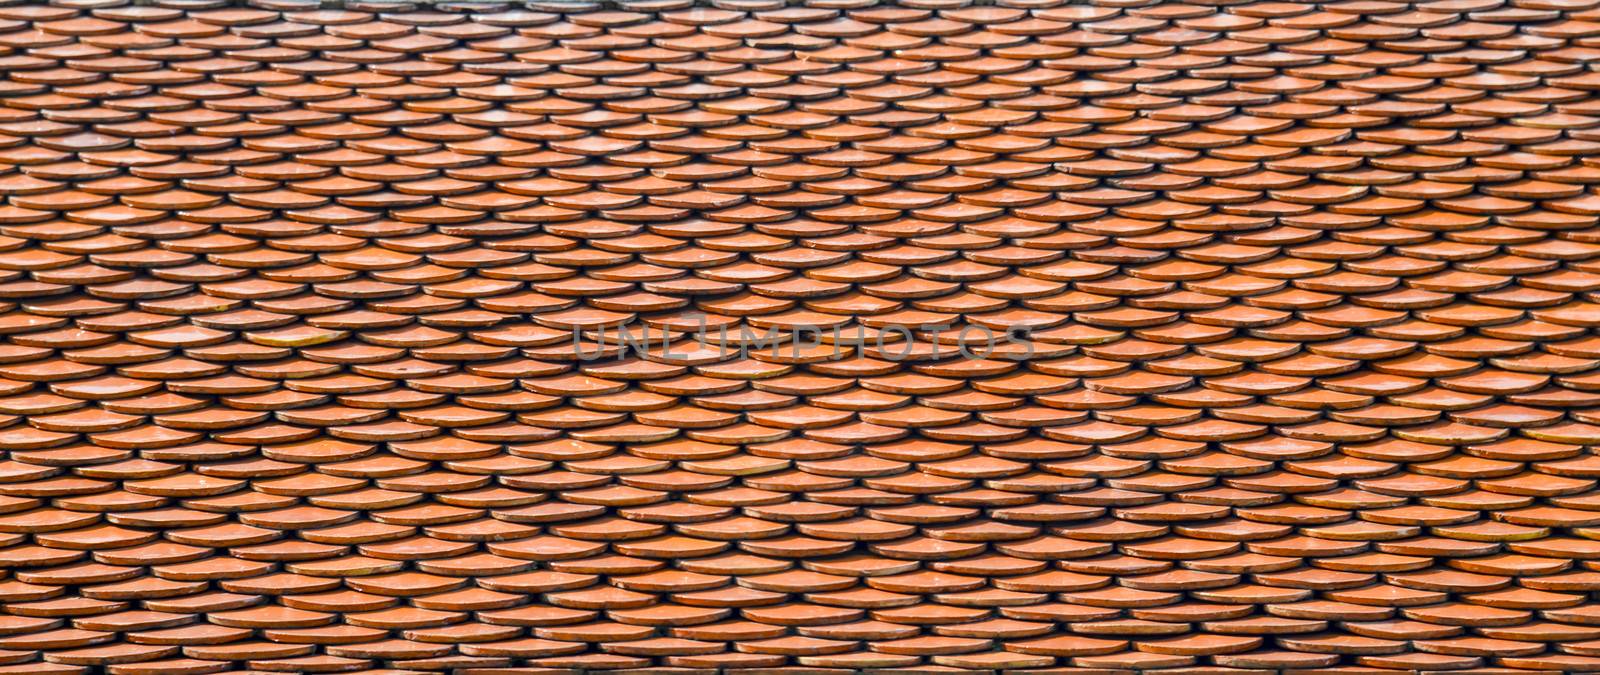 Pattern of roof temple2 by gjeerawut